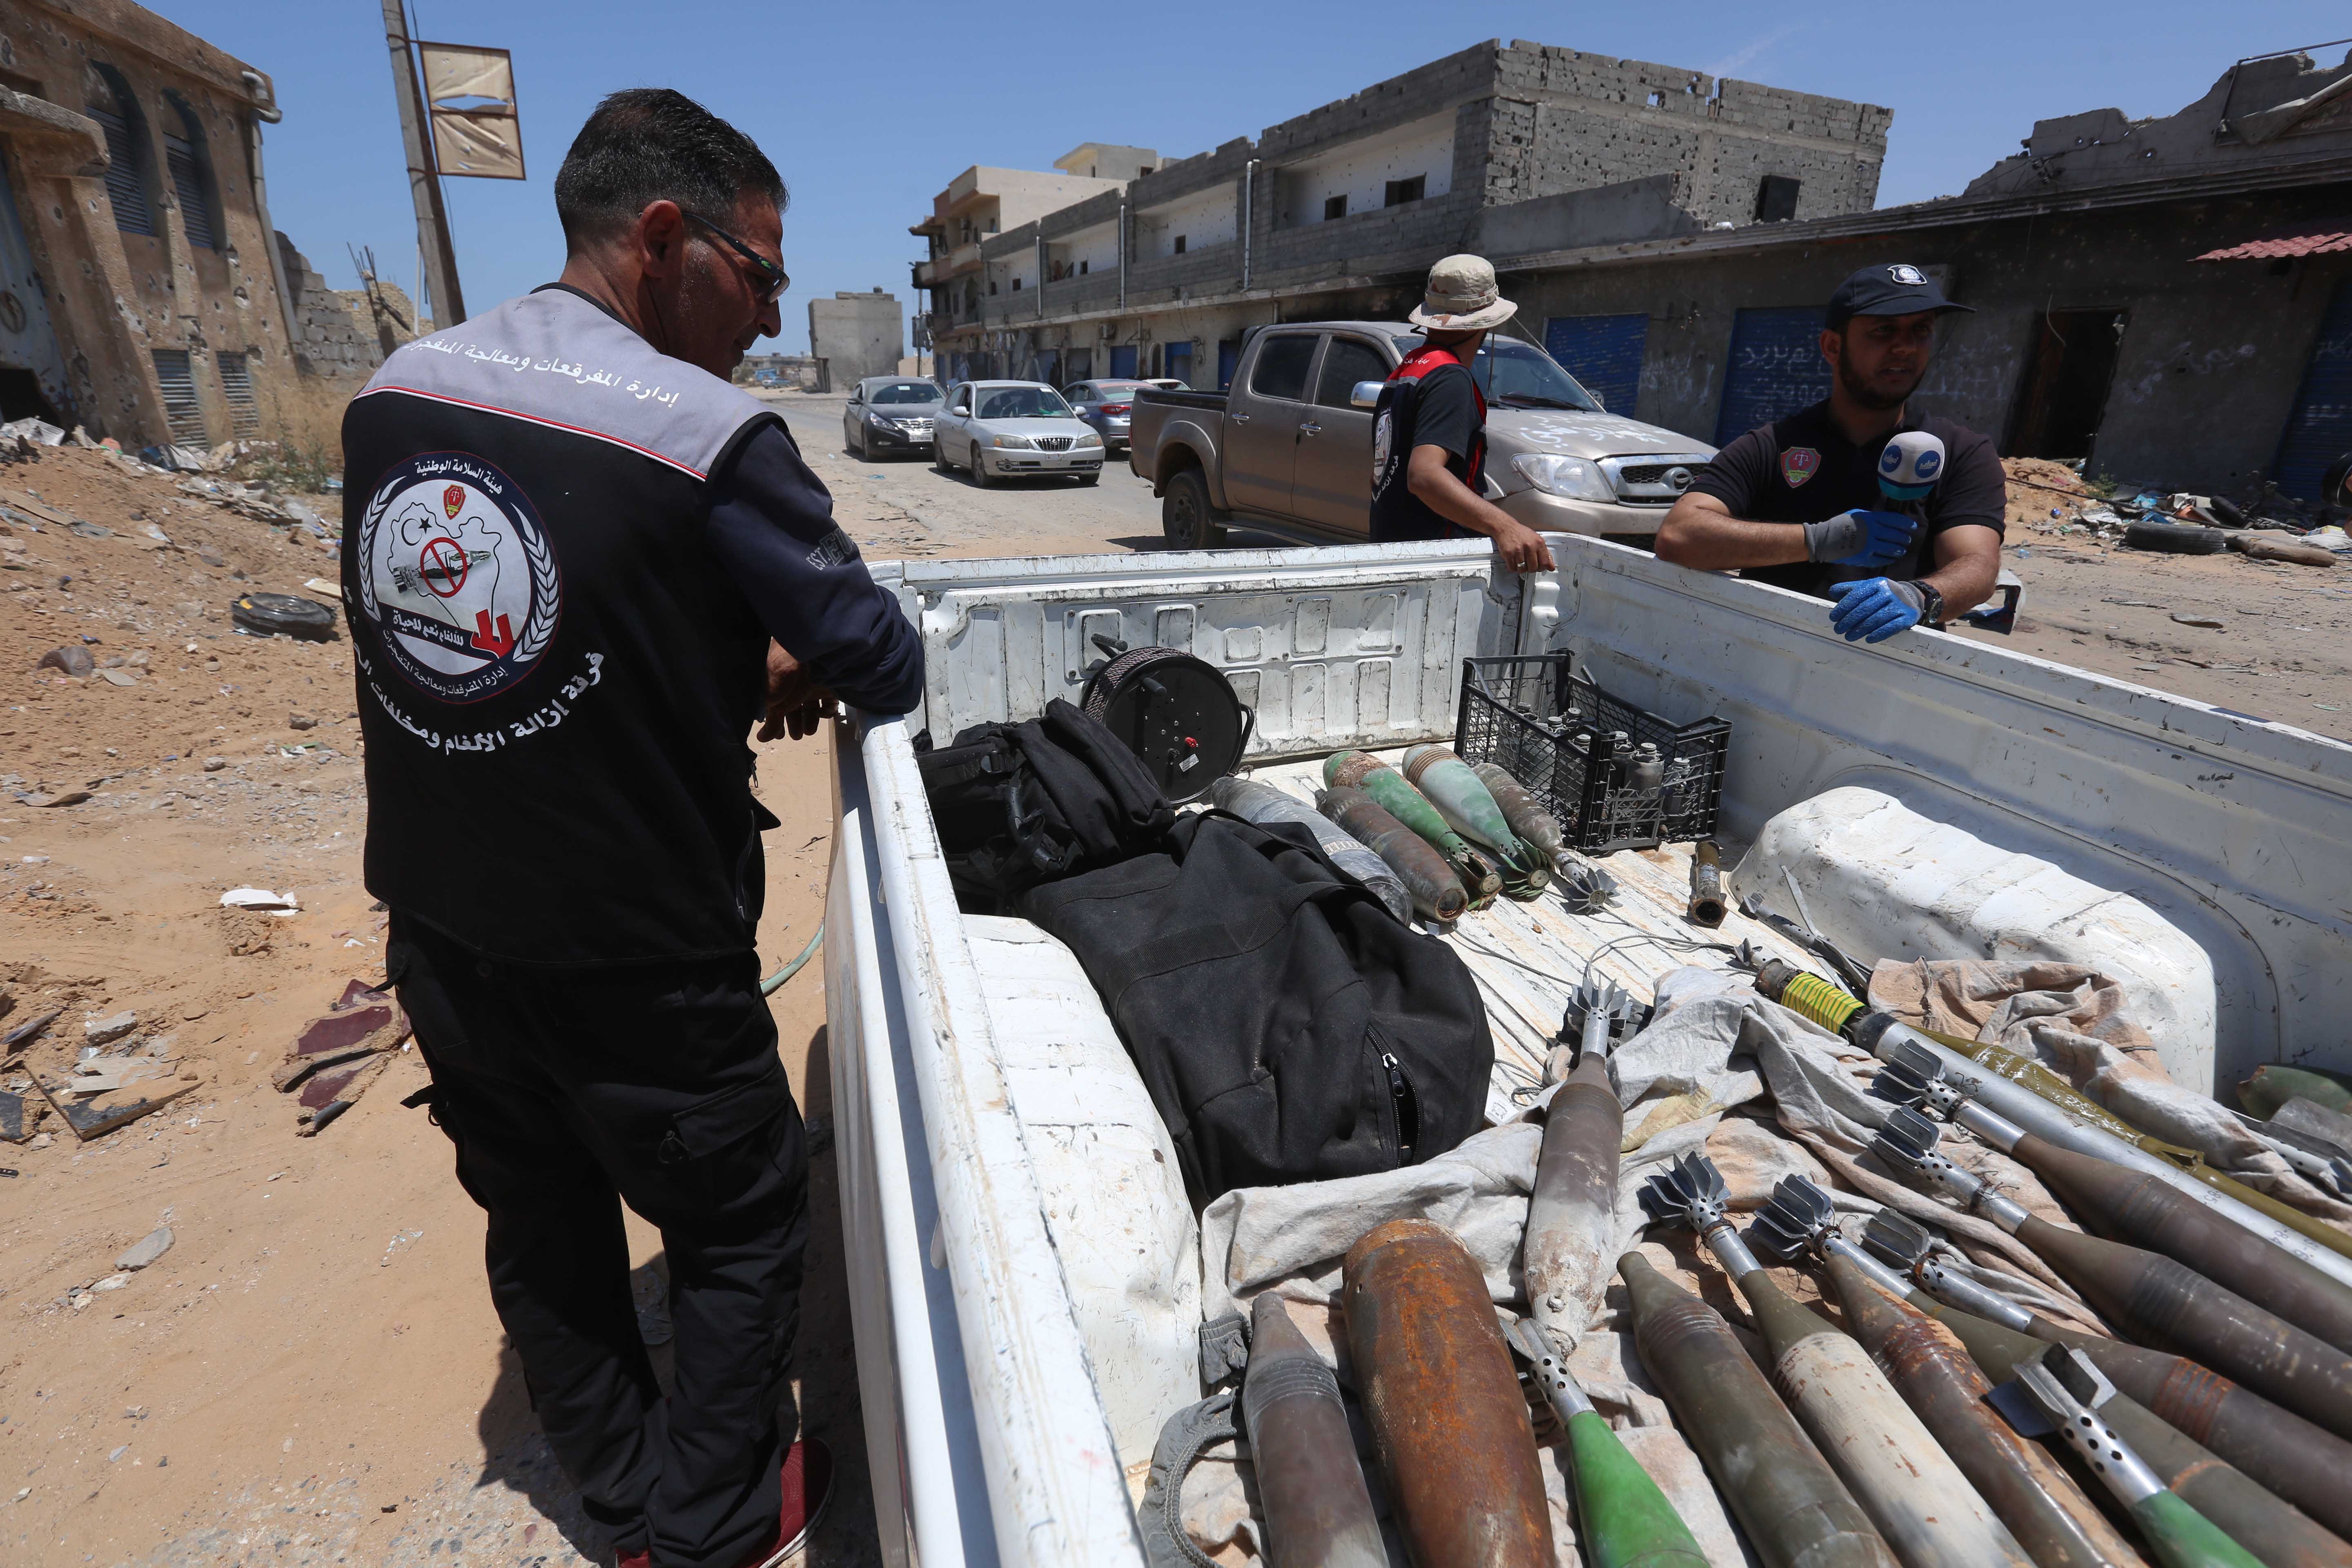 عناصر من "الهيئة الوطنية للسلامة" يزيلون ألغاما وعبوات ناسفة مستخدمة خلال النزاع المسلح في طرابلس، ليبيا، 3 يونيو/حزيران 2020.